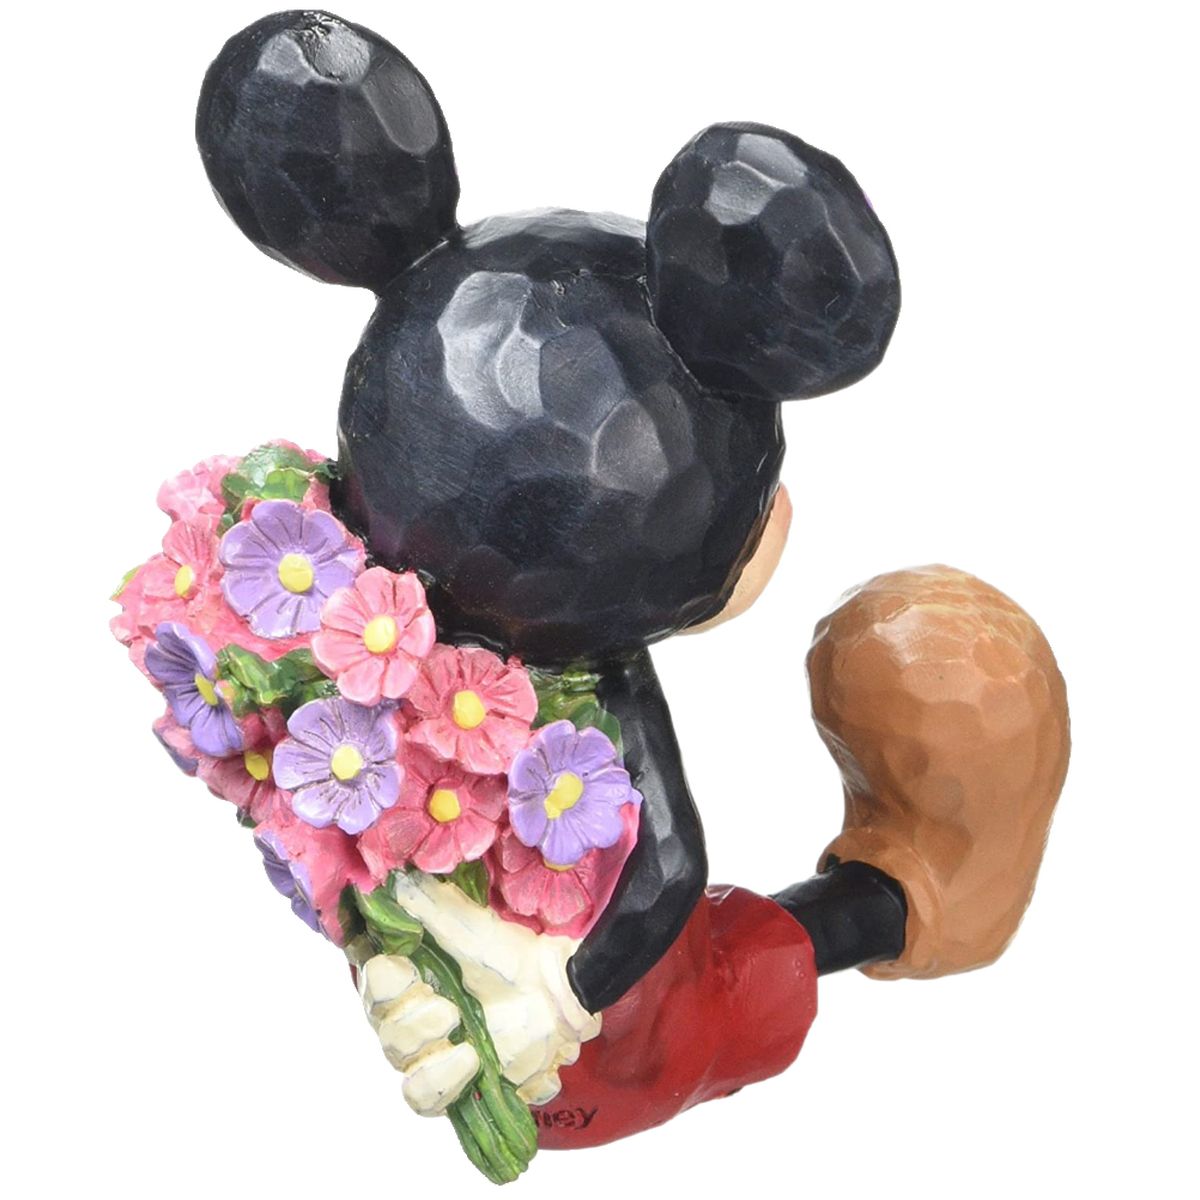 Petite statuette de Collection Mickey